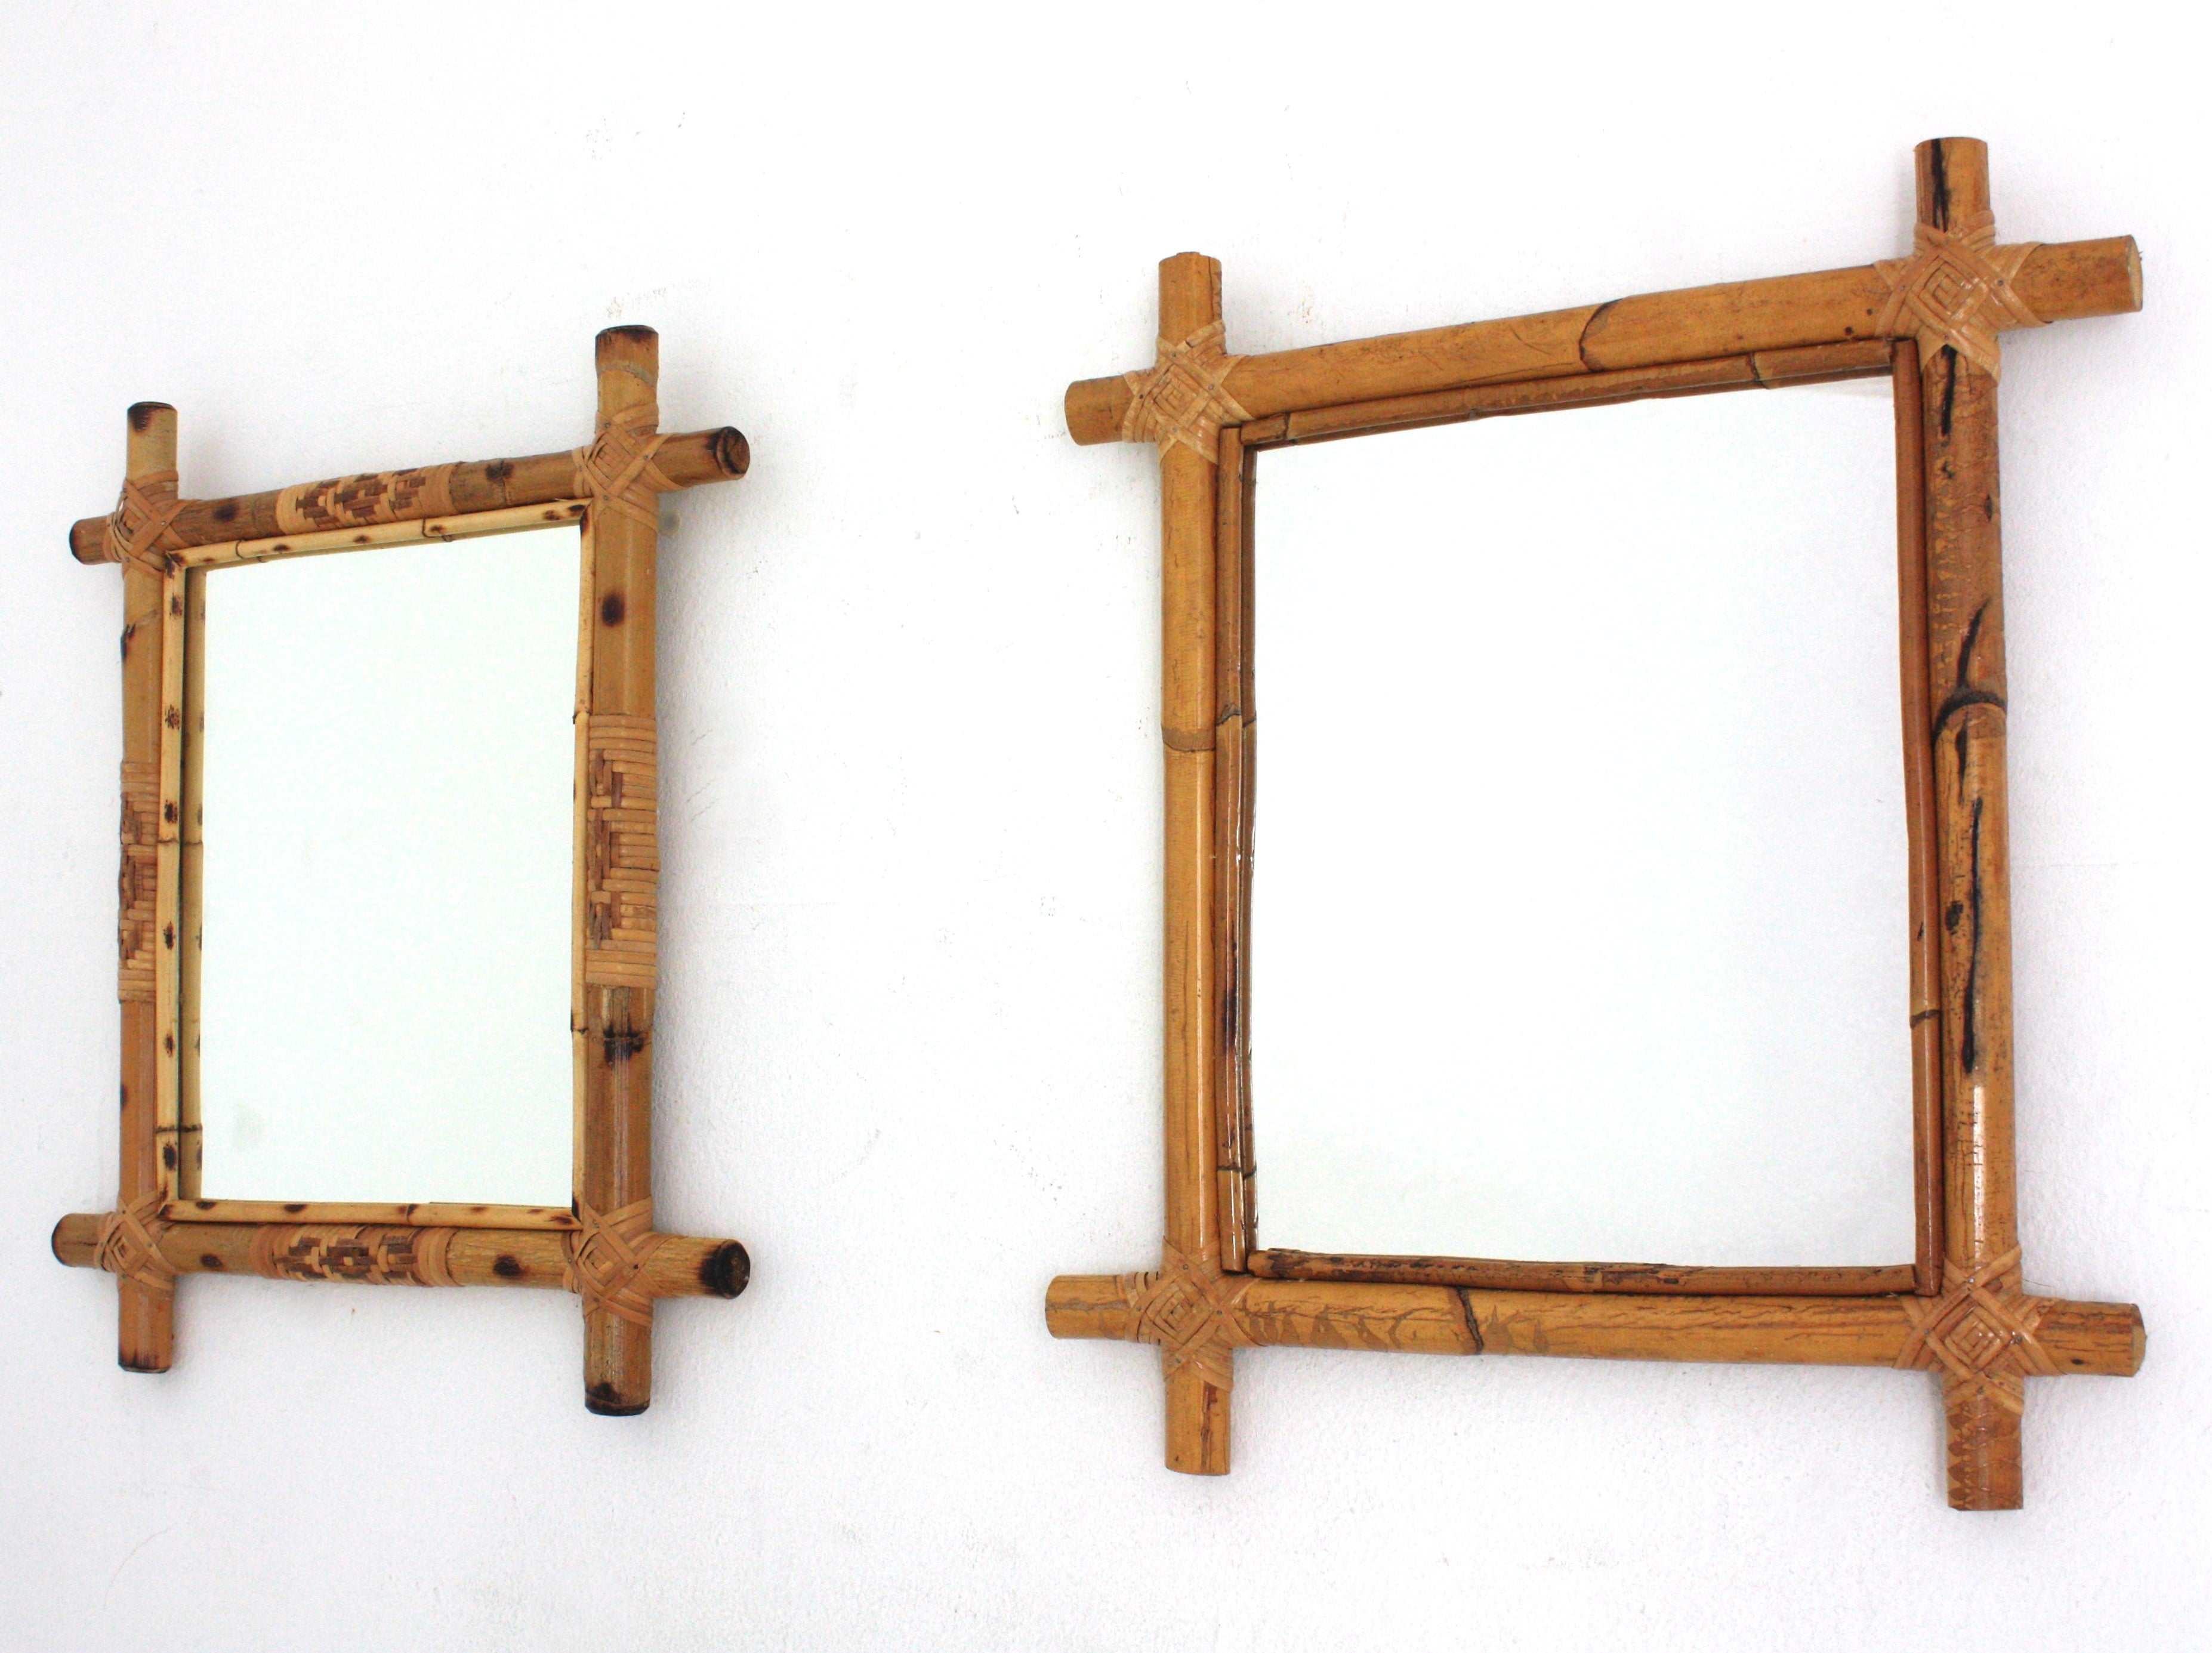 Paire de miroirs muraux rectangulaires dépareillés, bambou, rotin
Miroirs rectangulaires attrayants fabriqués à la main en bambou/canne de rotin. Espagne, années 1960.
Miroirs rectangulaires en rotin avec cadres à coins croisés.
Inspiré des designs